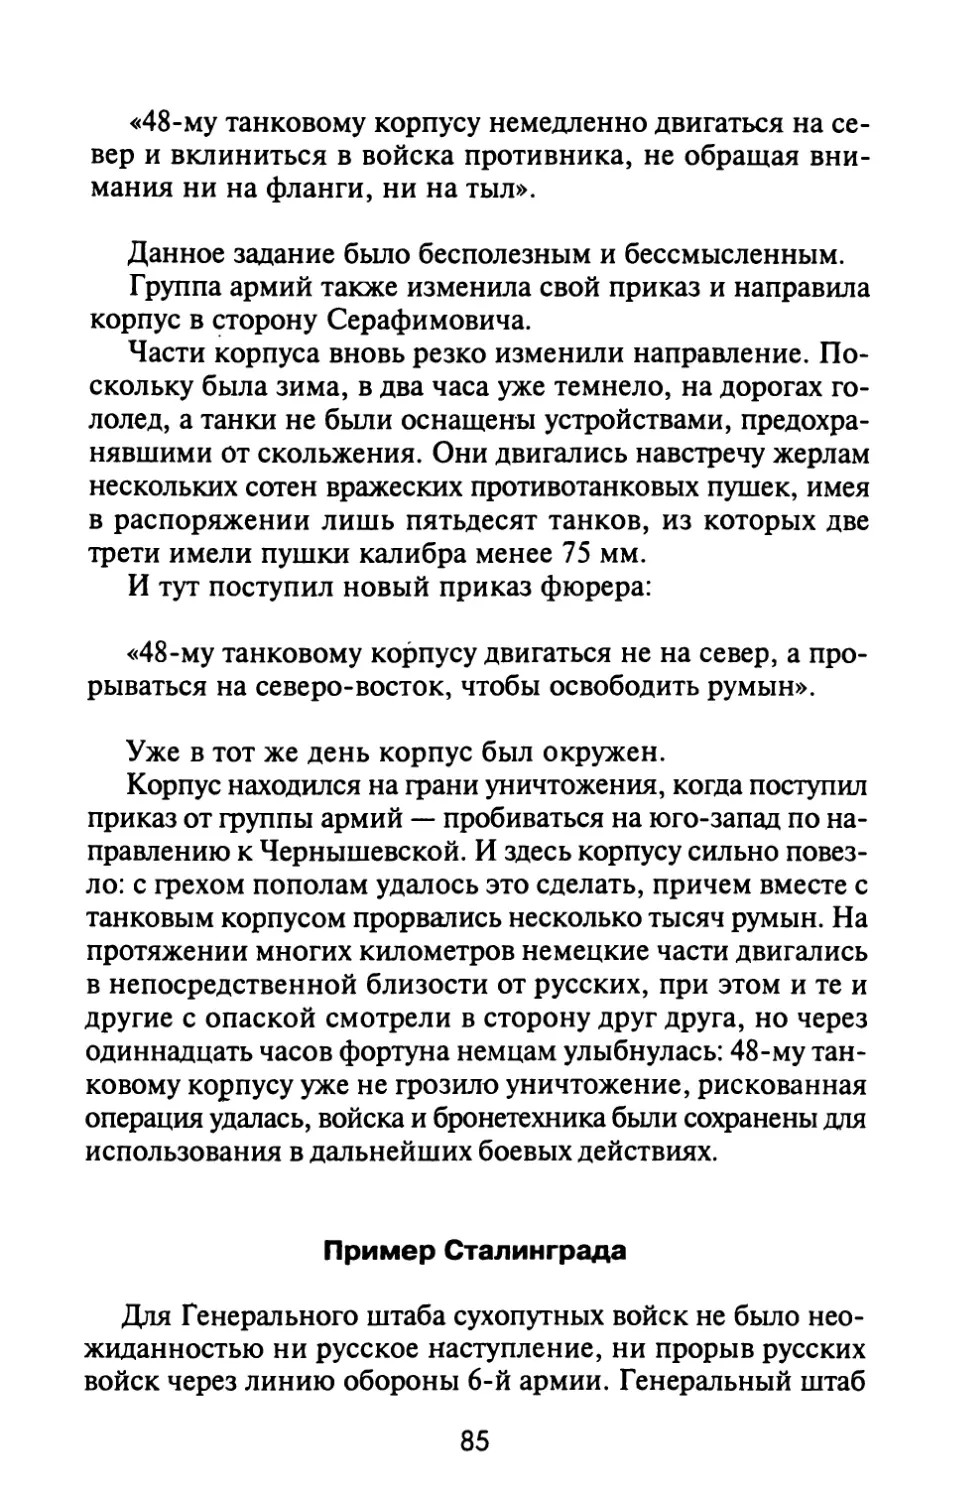 Пример Сталинграда